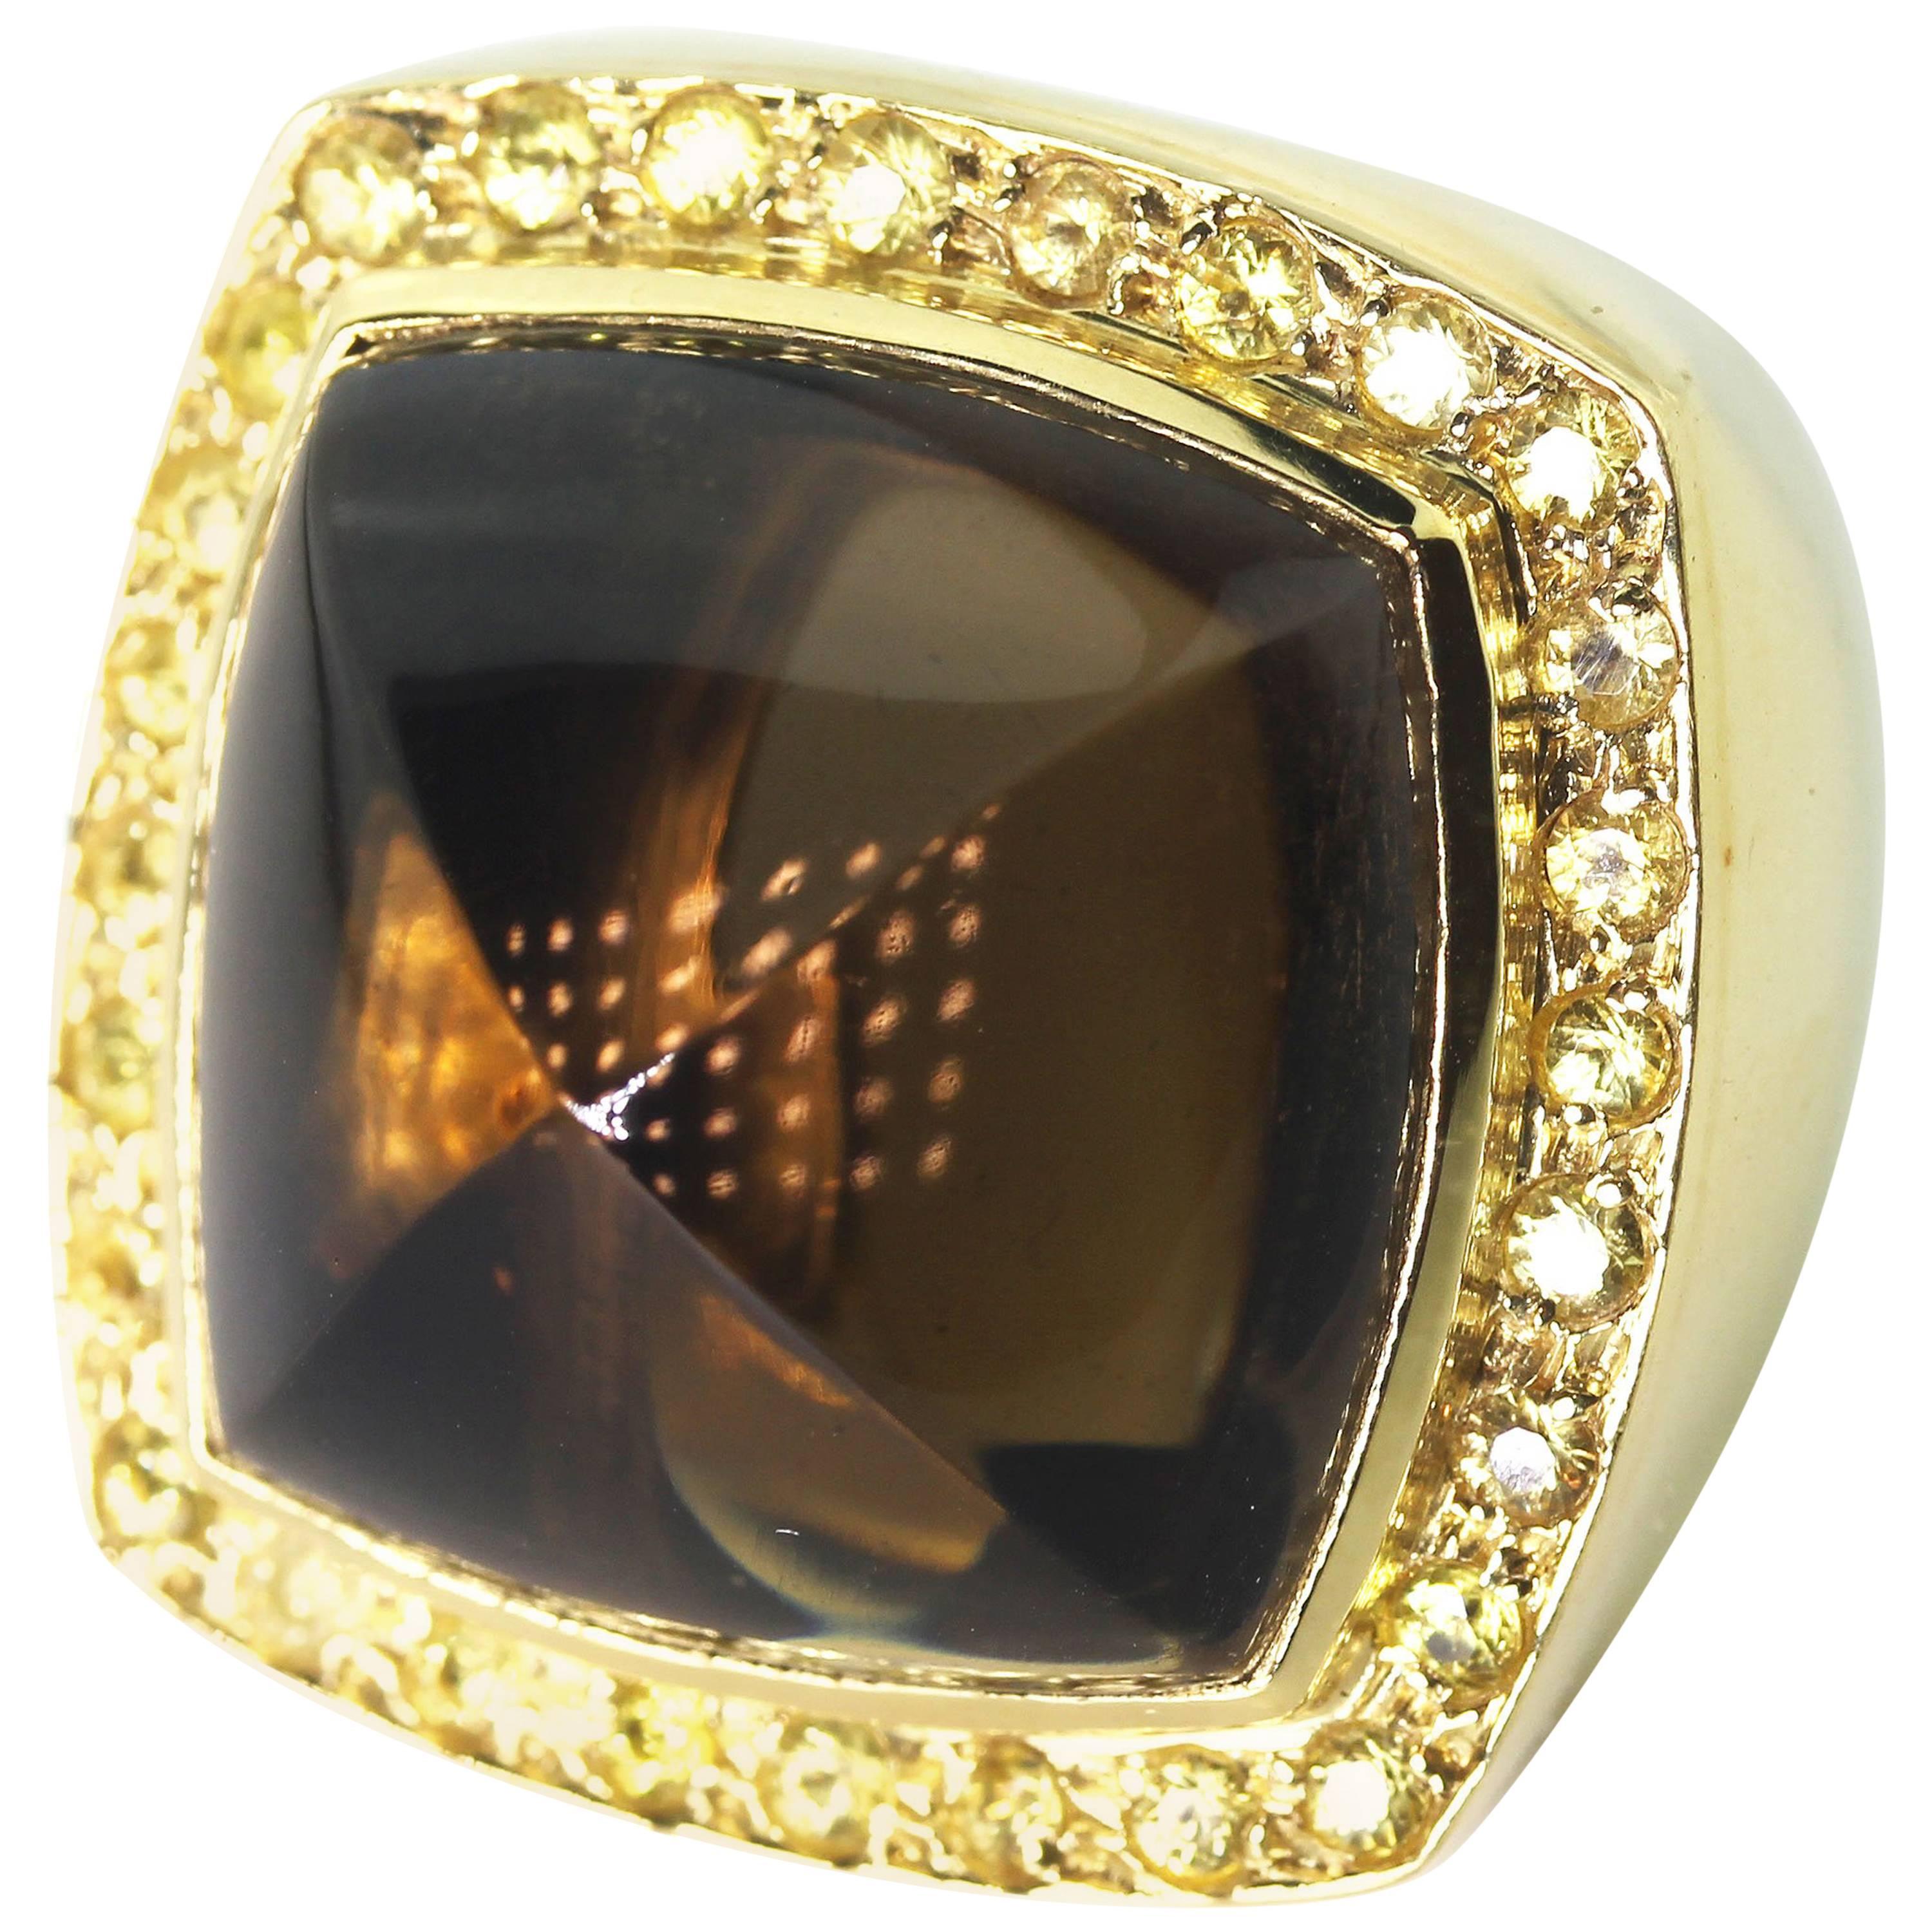 Schöne große 18Kt Gelbgold Ring mit großen 32,4 Karat Rauchquarz mit funkelnden schönen 2,5 Karat brillanten gelben Saphiren verbessert gesetzt.  Dieser einzigartige handgefertigte Ring ist eine Größe 7 (sizable). Der Rauchquarz misst 20 mm x 20 mm